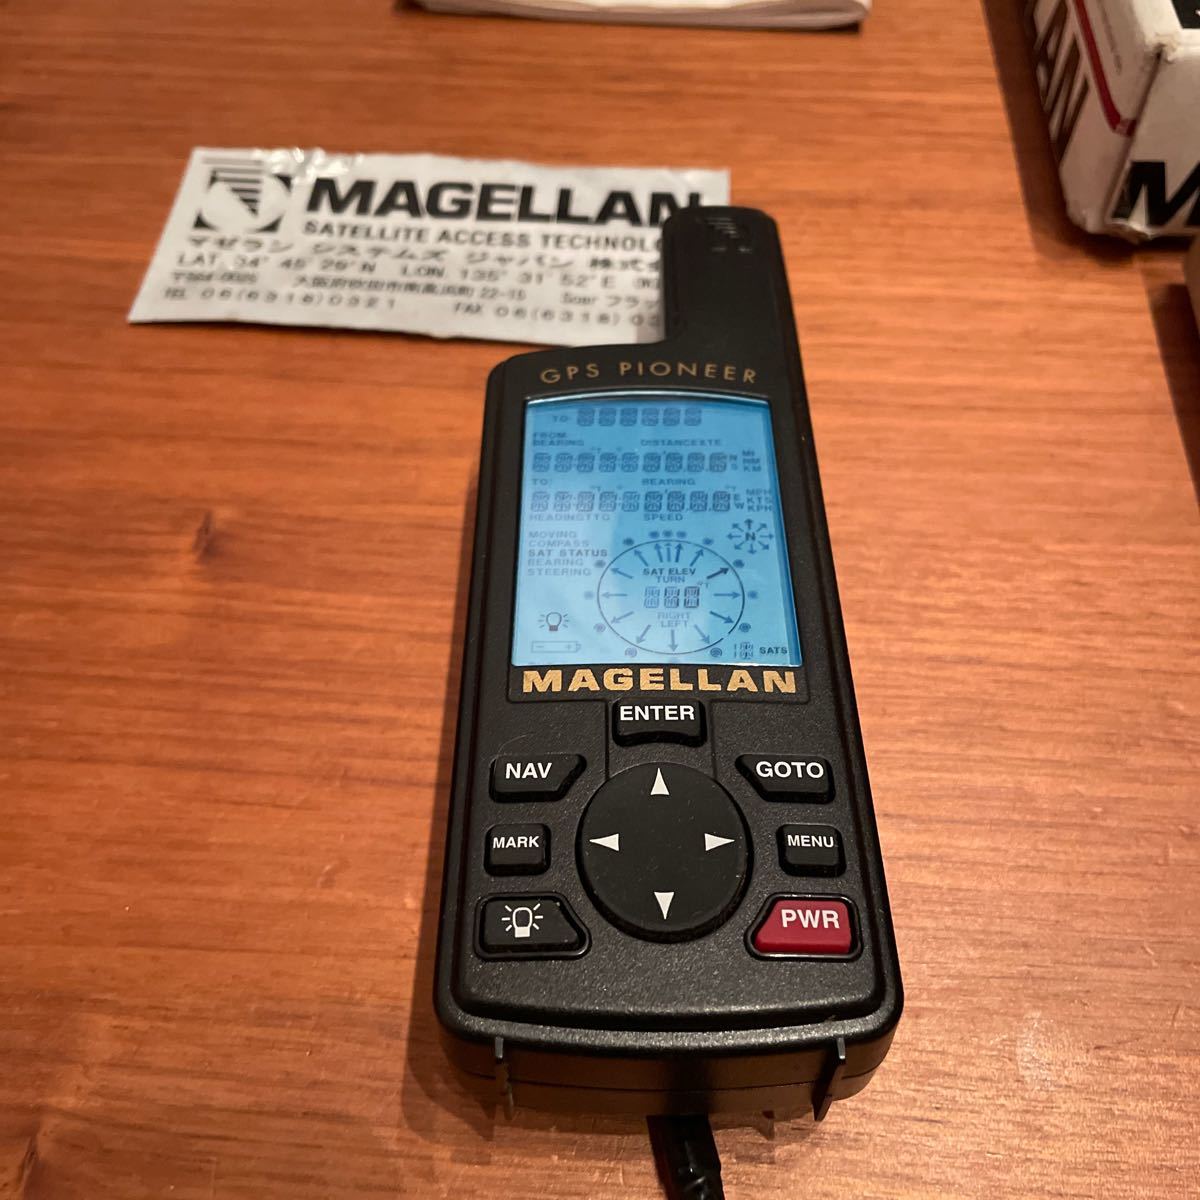 MAGELLAN GPS PIONEER снят с производства товар редкий товар новый товар не использовался протестирован Япония стандартный импортные товары Magellan система z в наличии compact GPS